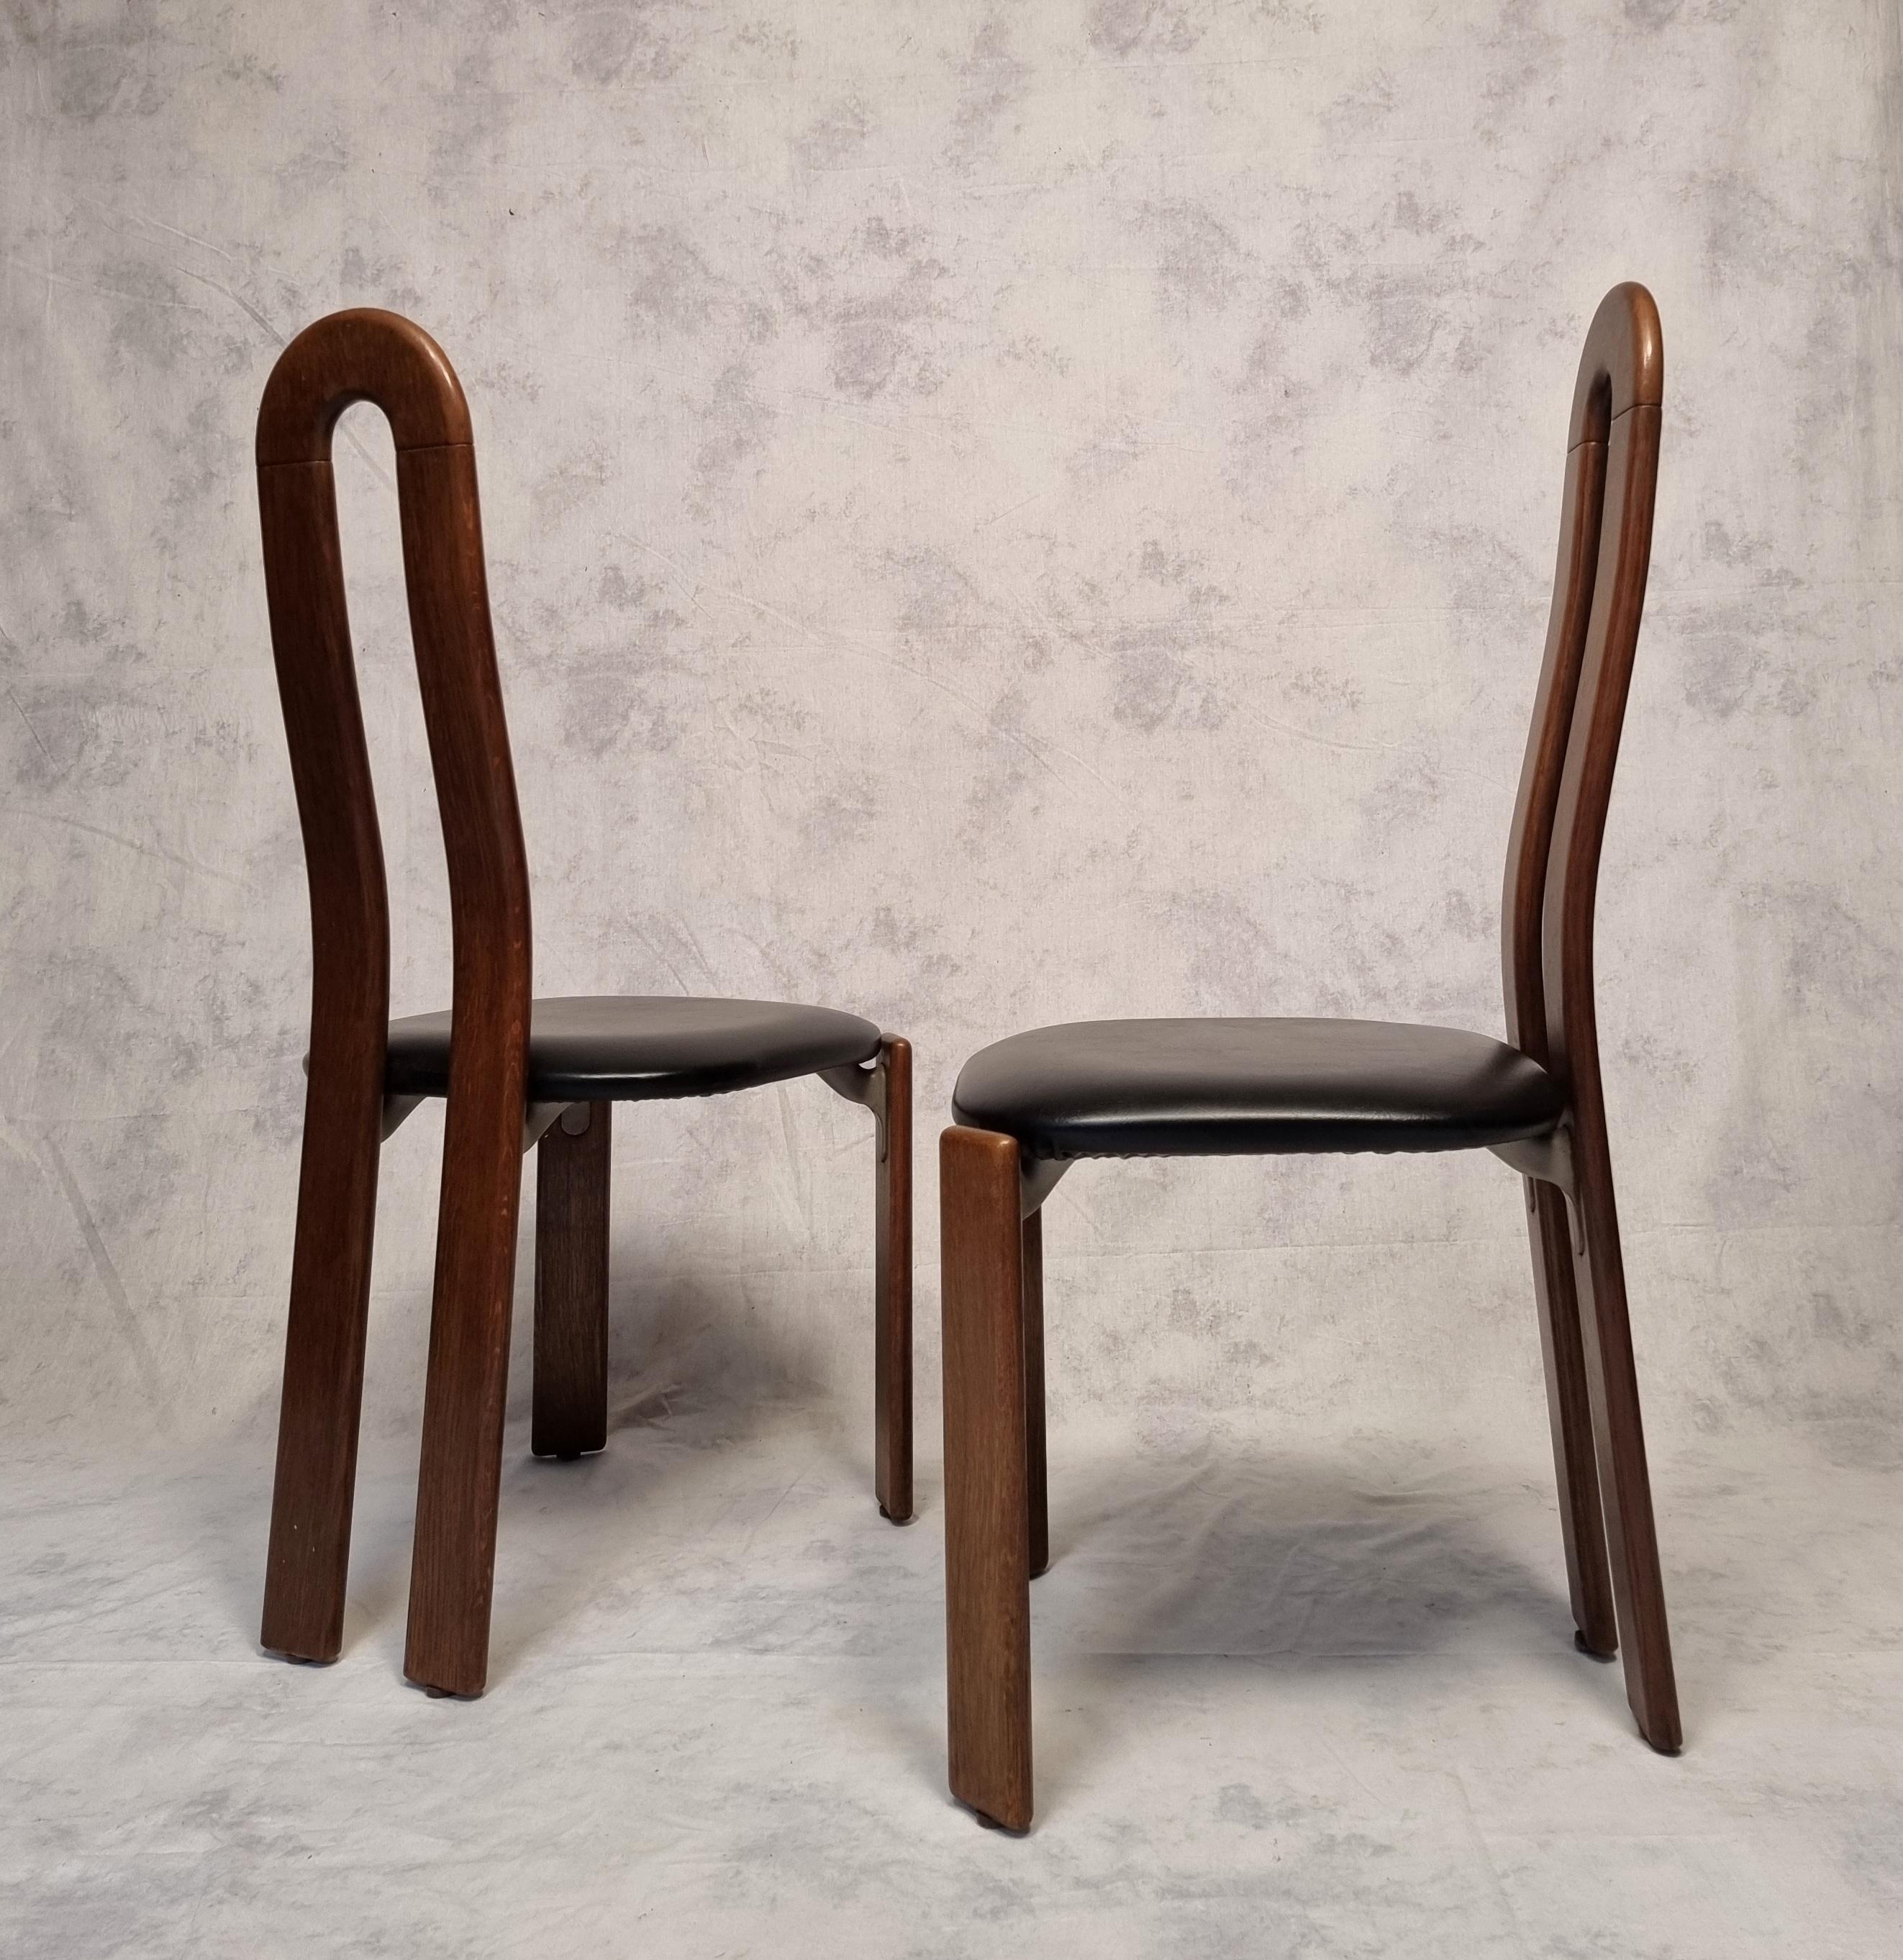 Late 20th Century Bruno Rey Chairs for Dietiker by Atelier Stuhl Aus Stein Am Rhein, Oak, Ca 1970 For Sale